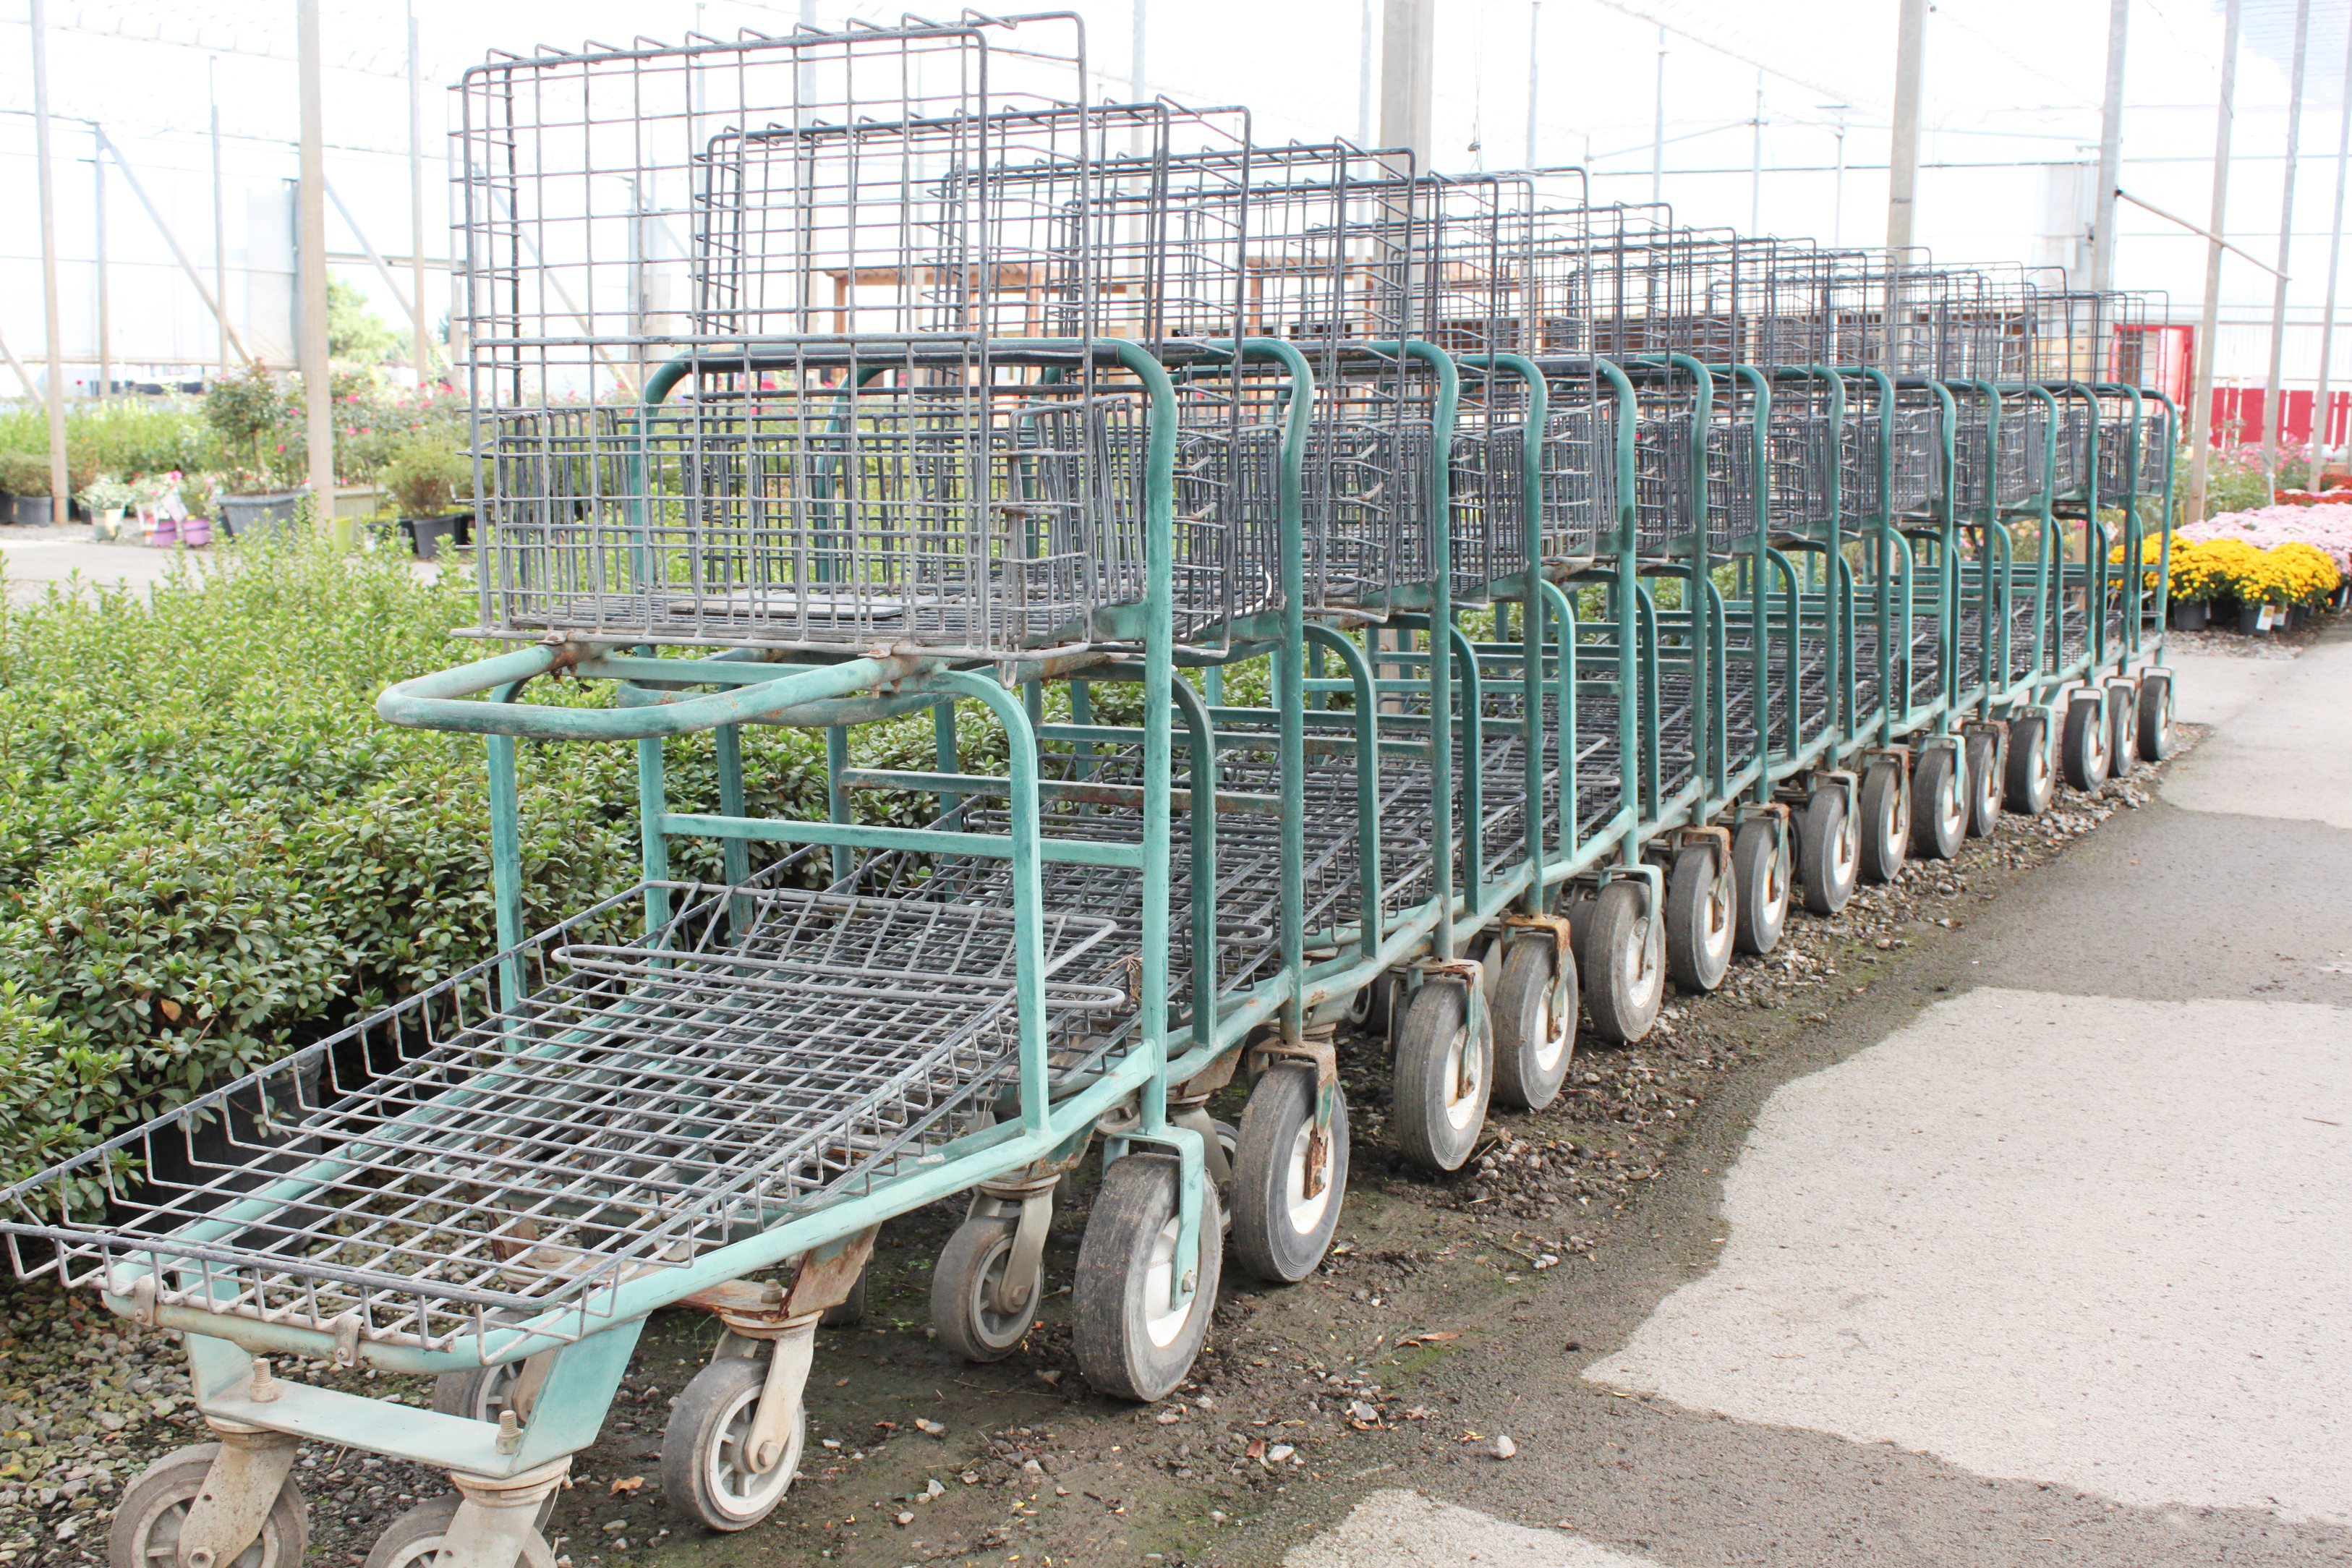 Shopping carts in a garden center photo